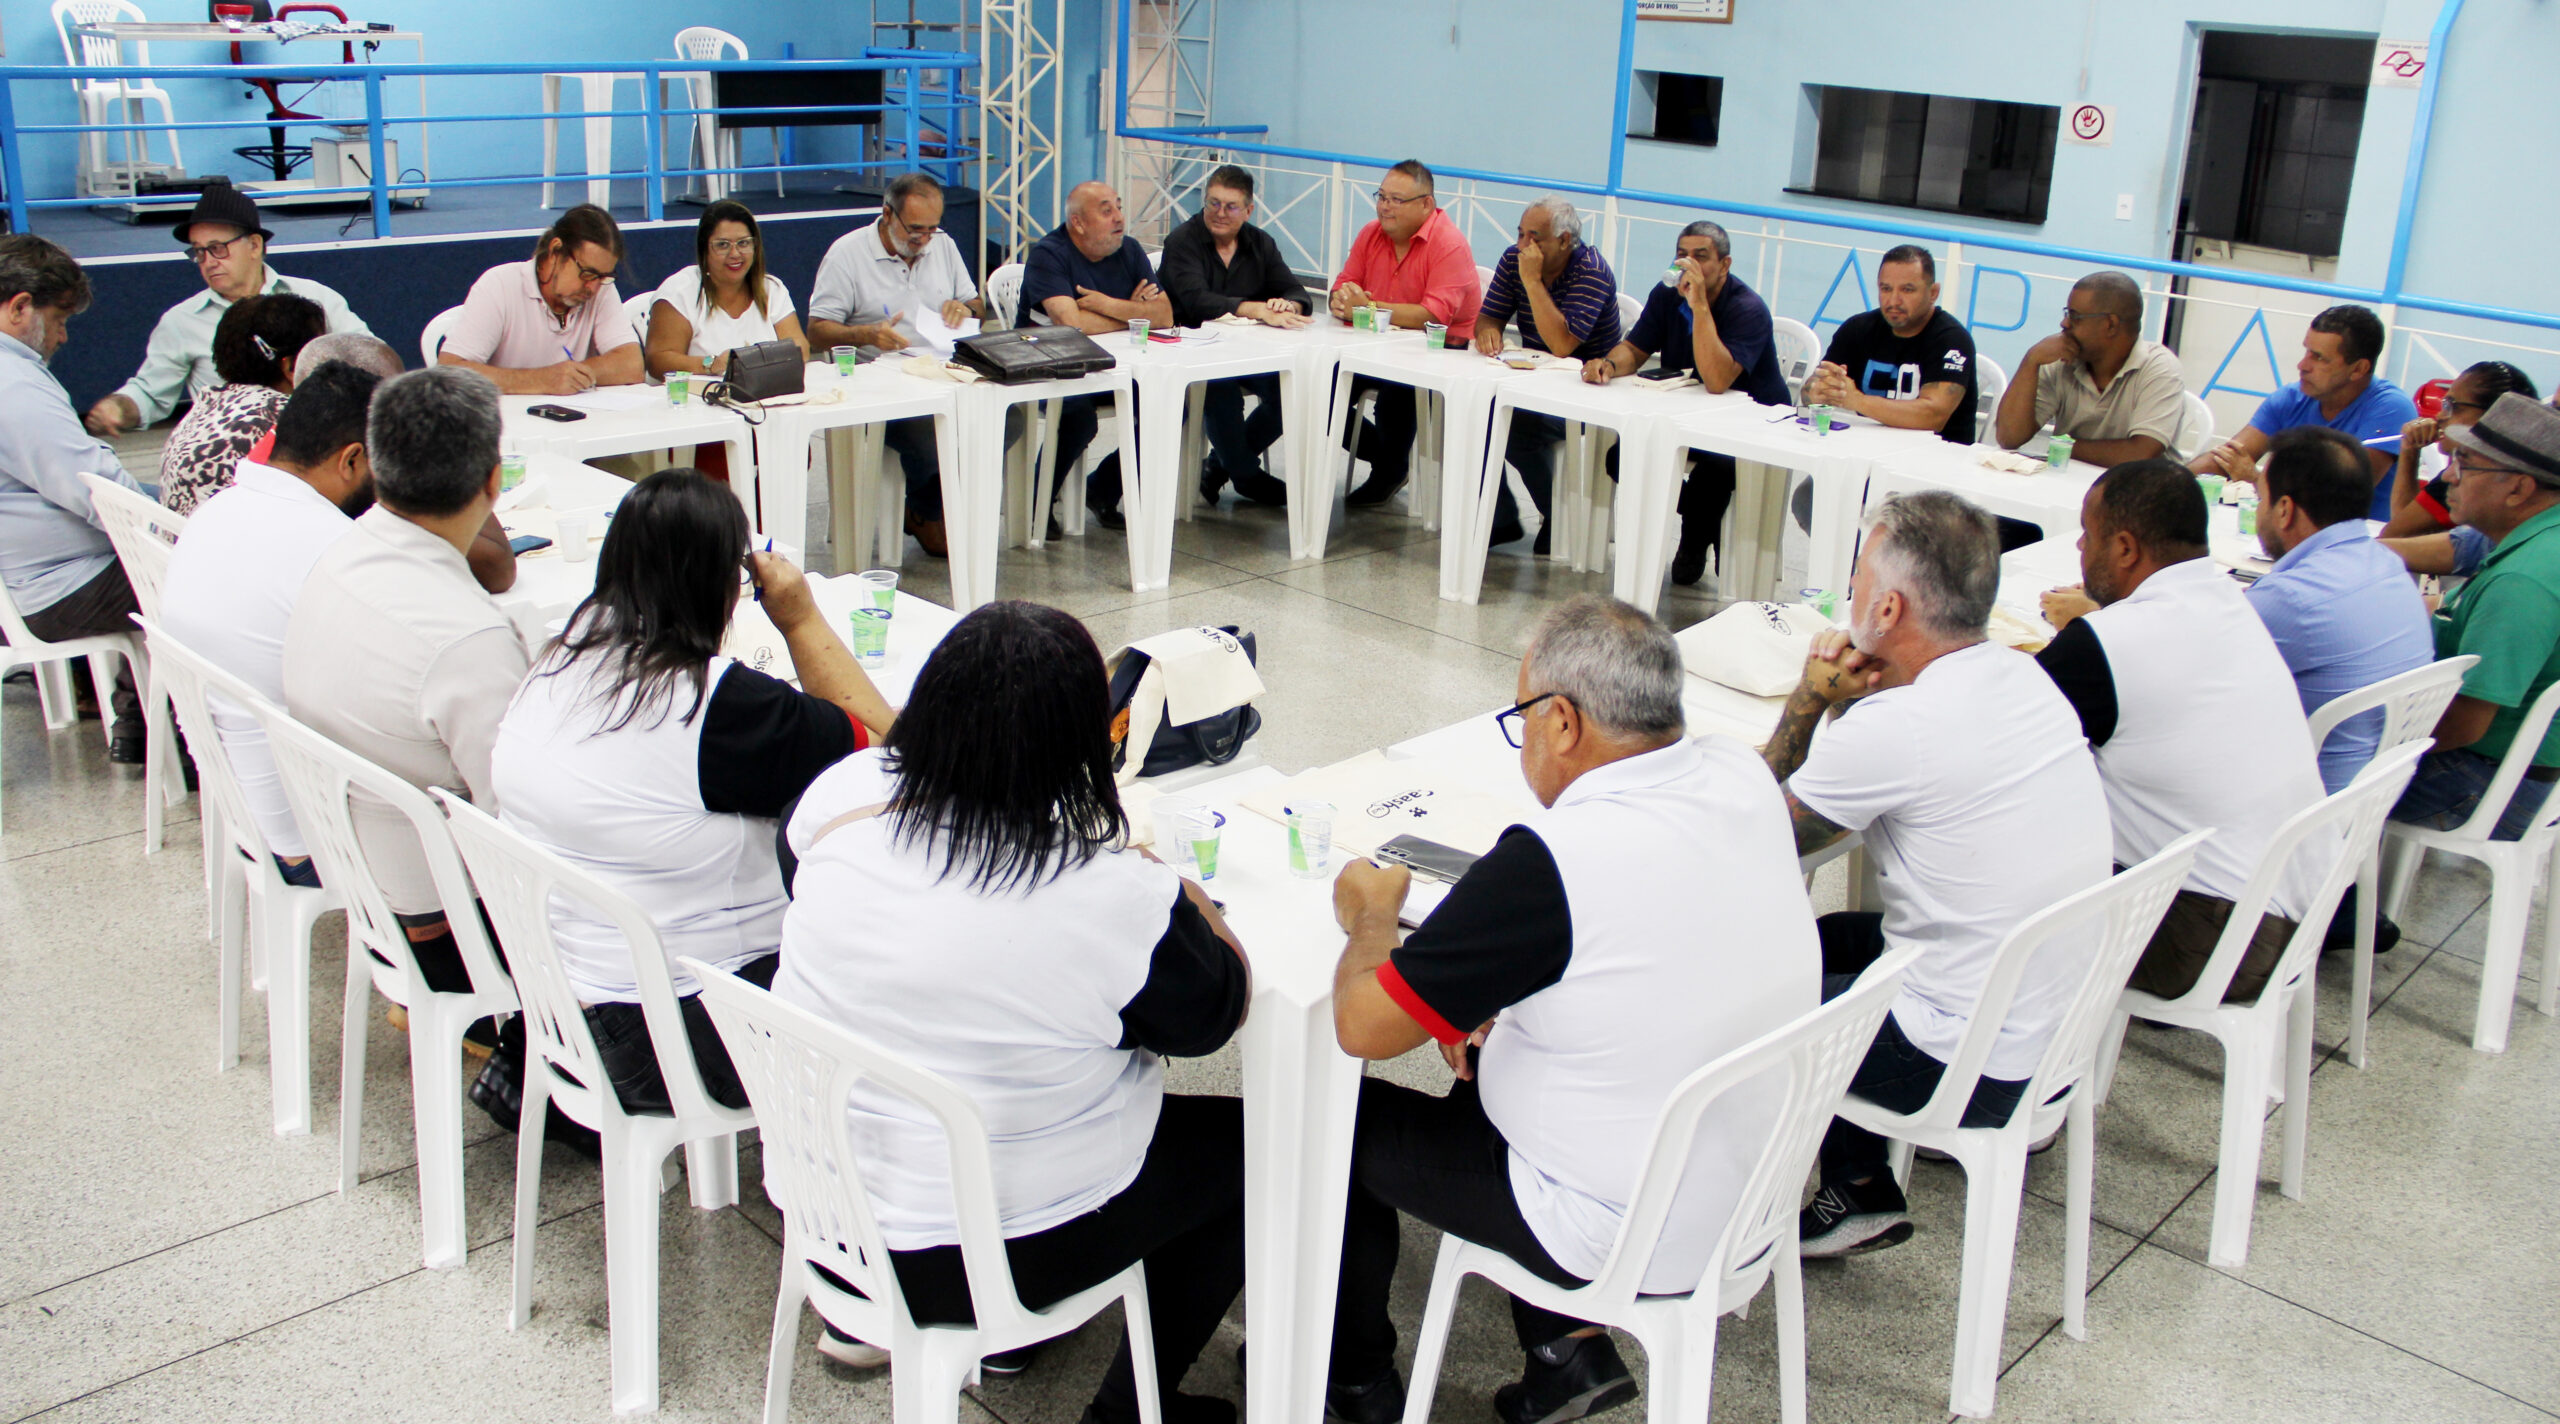 Tesoureiro Aires Ribeiro participa de importante reunião de reestruturação da Federação dos Servidores de São Paulo